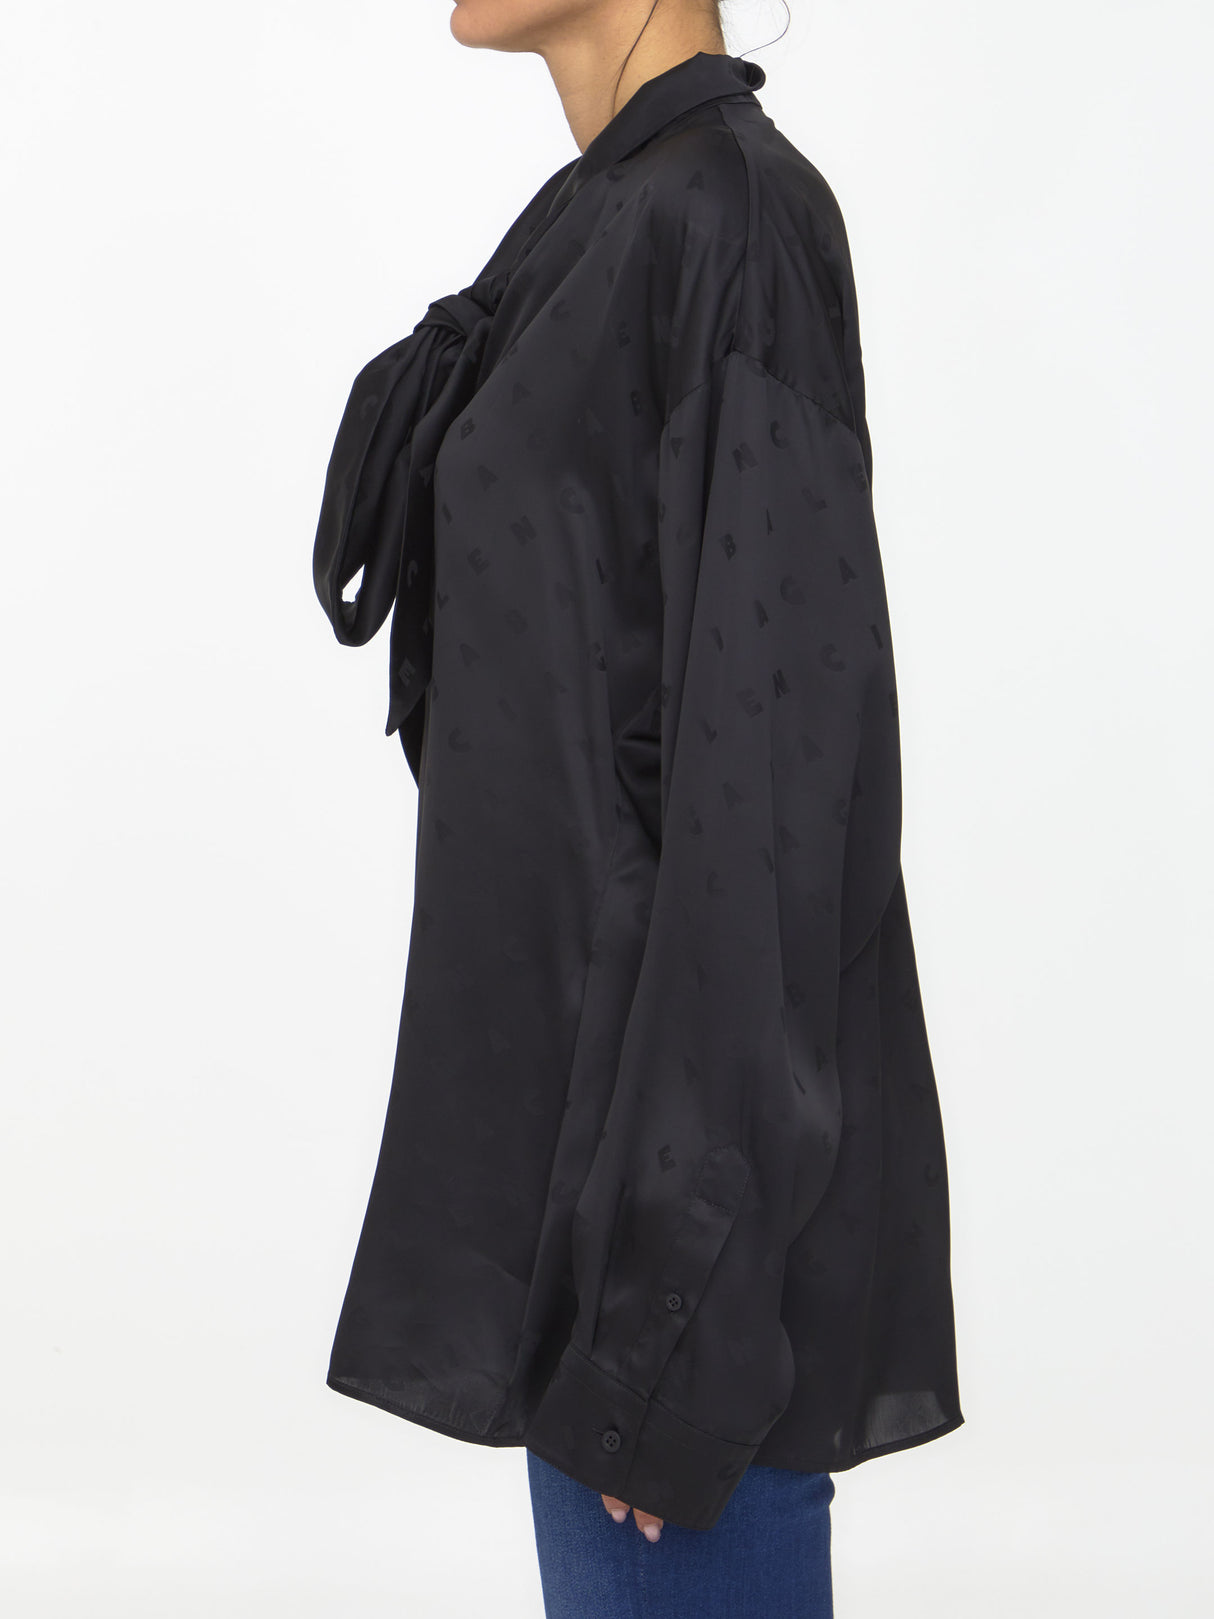 BALENCIAGA V-Neck Black Blouse with Bow for Women - SS23 Collection